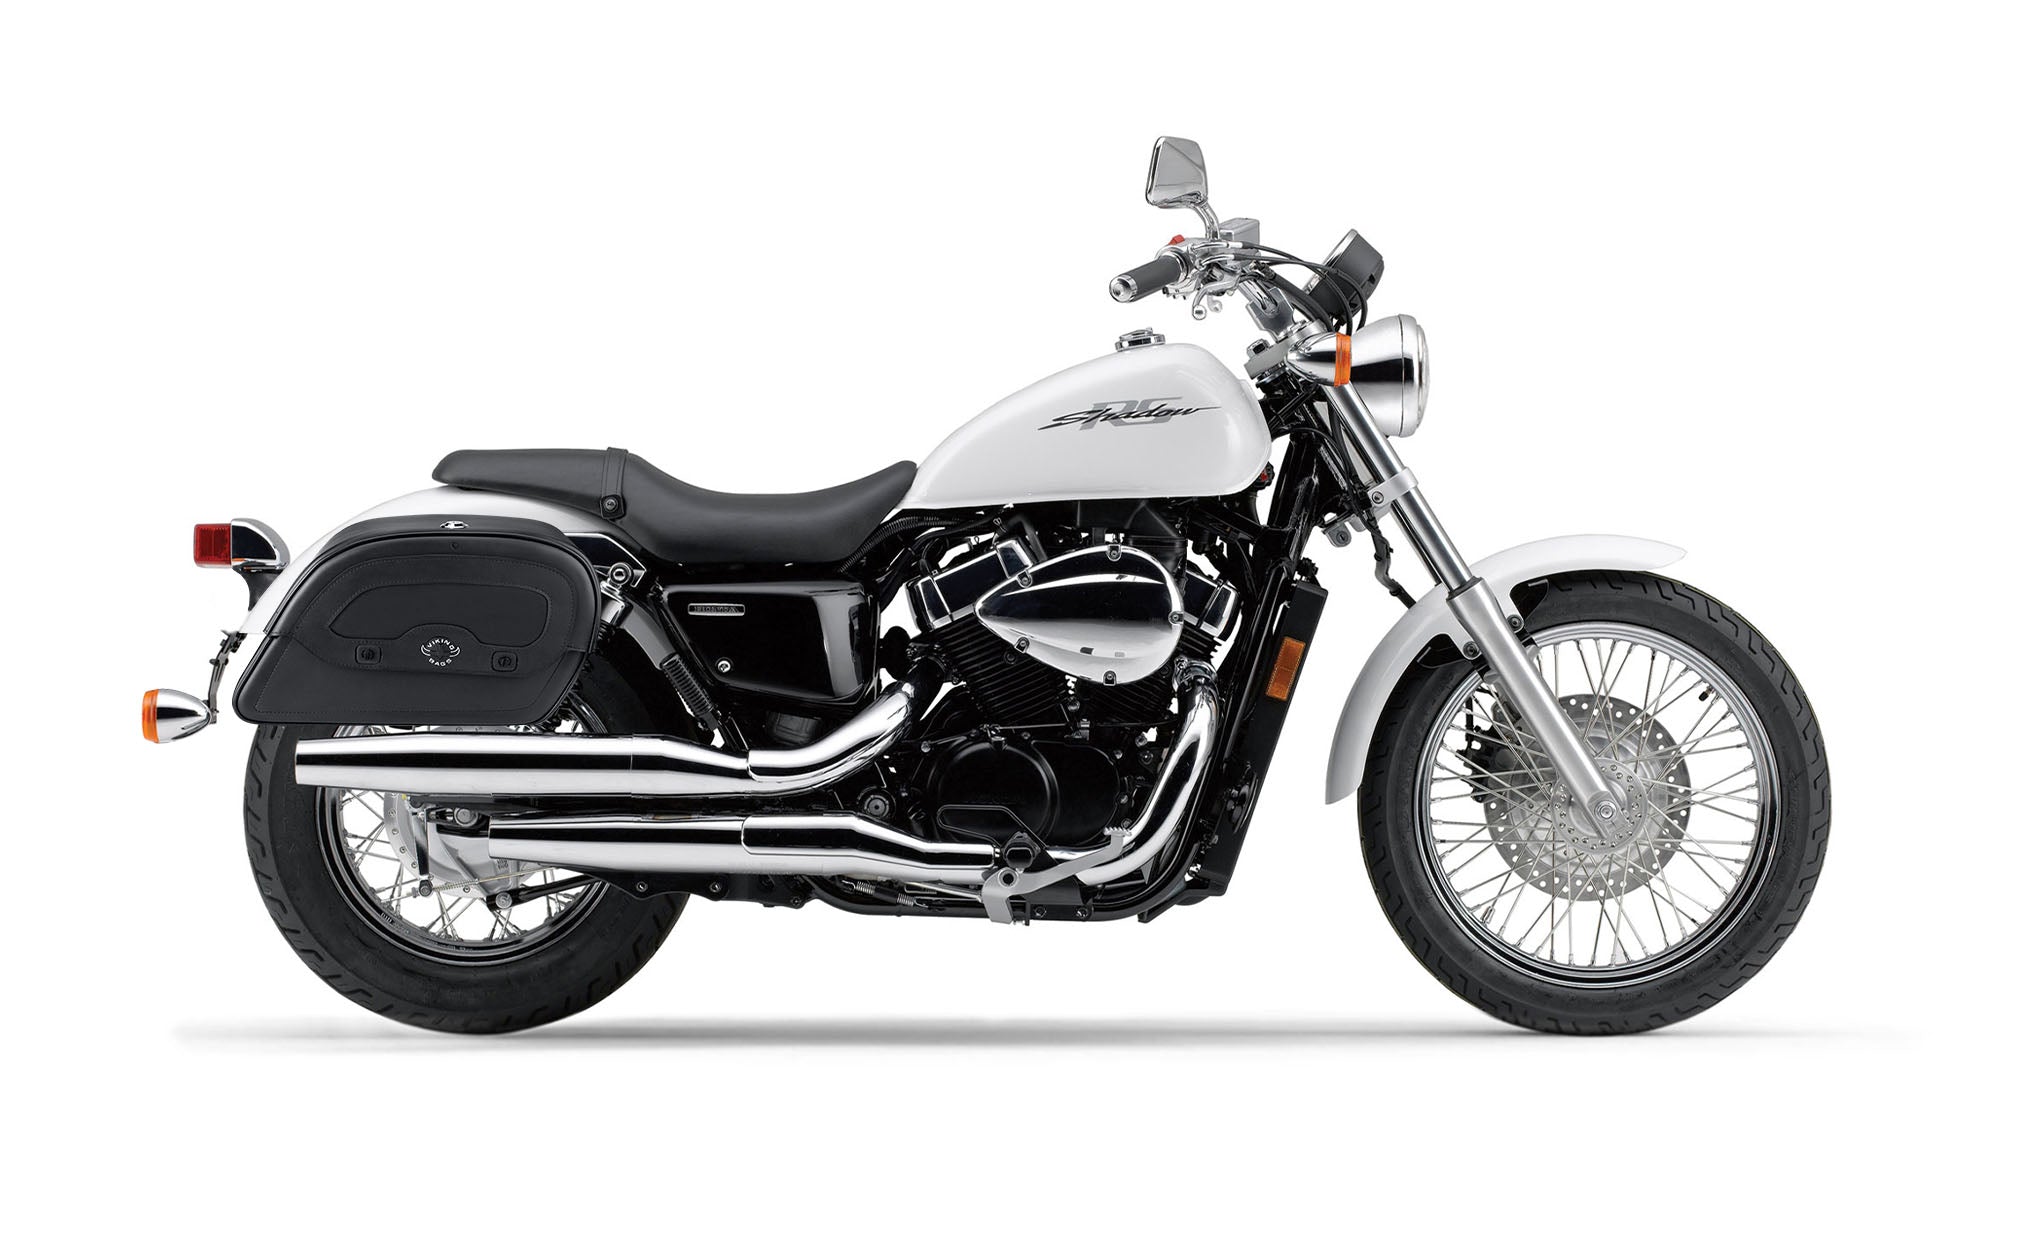 Viking Warrior Medium Honda Shadow 750 Rs Leather Motorcycle Saddlebags on Bike Photo @expand